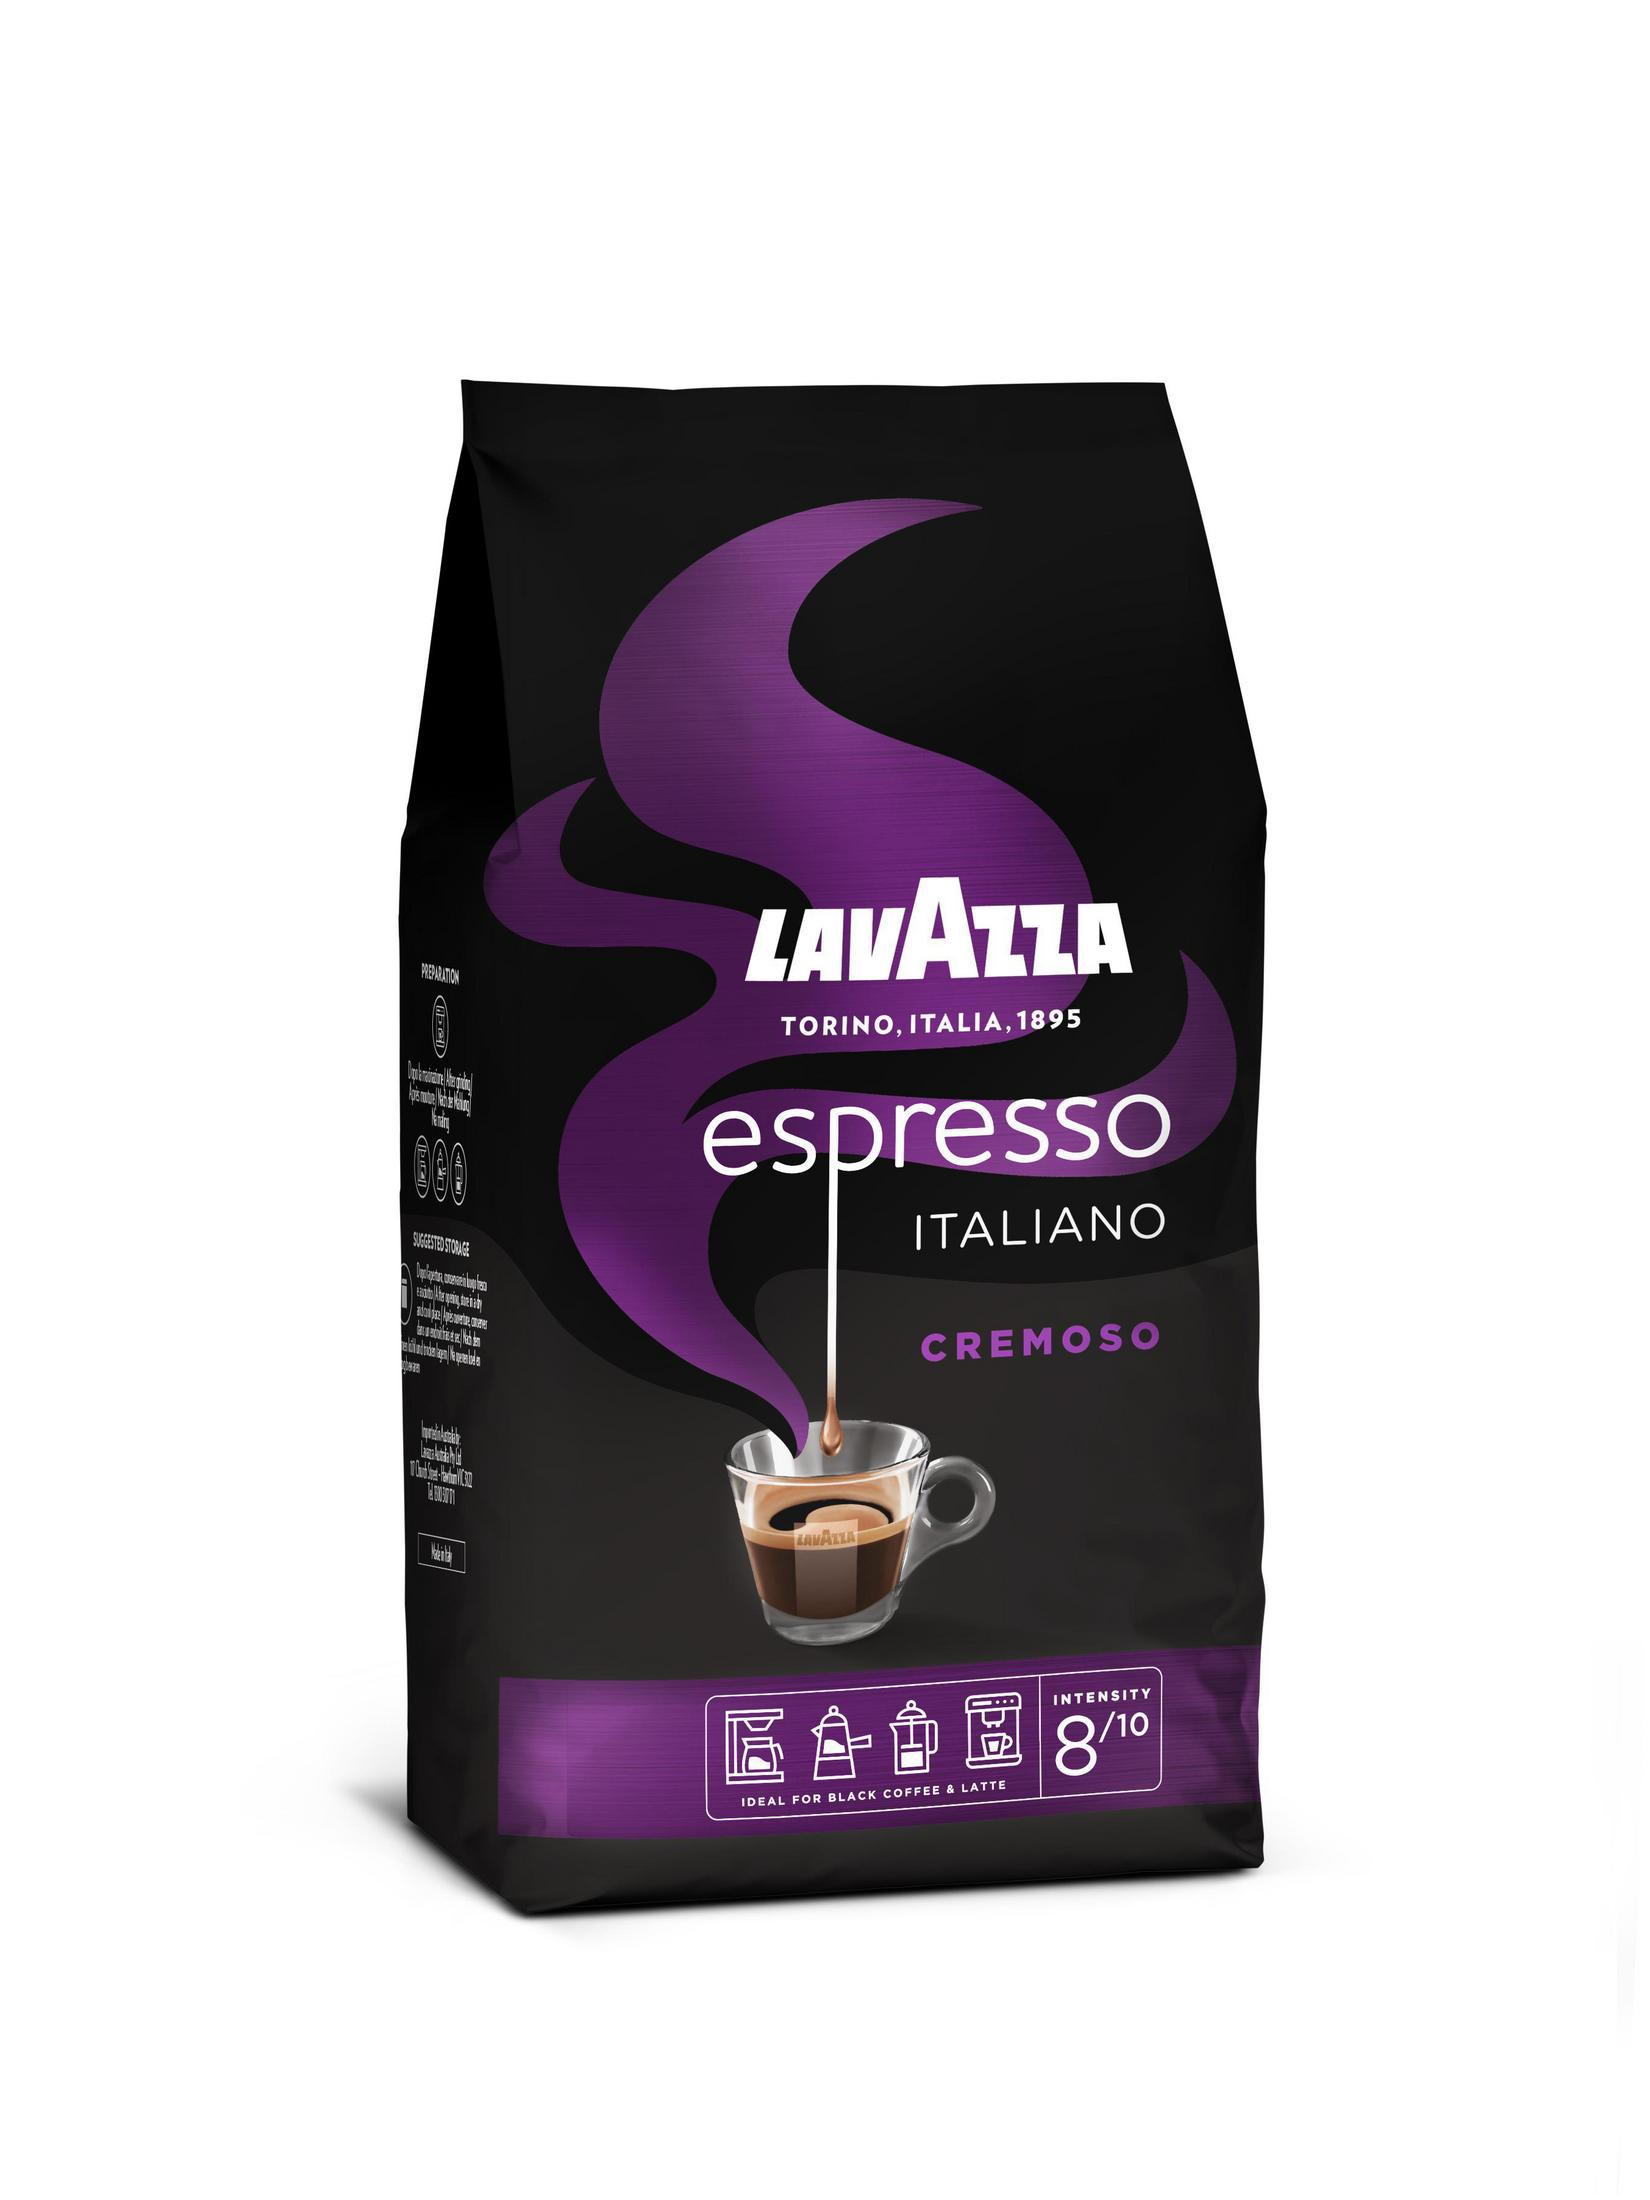 LAVAZZA 2799 ESPR.CREMOSO (Kaffeevollautomaten) 1KG BOHNE Kaffeebohnen